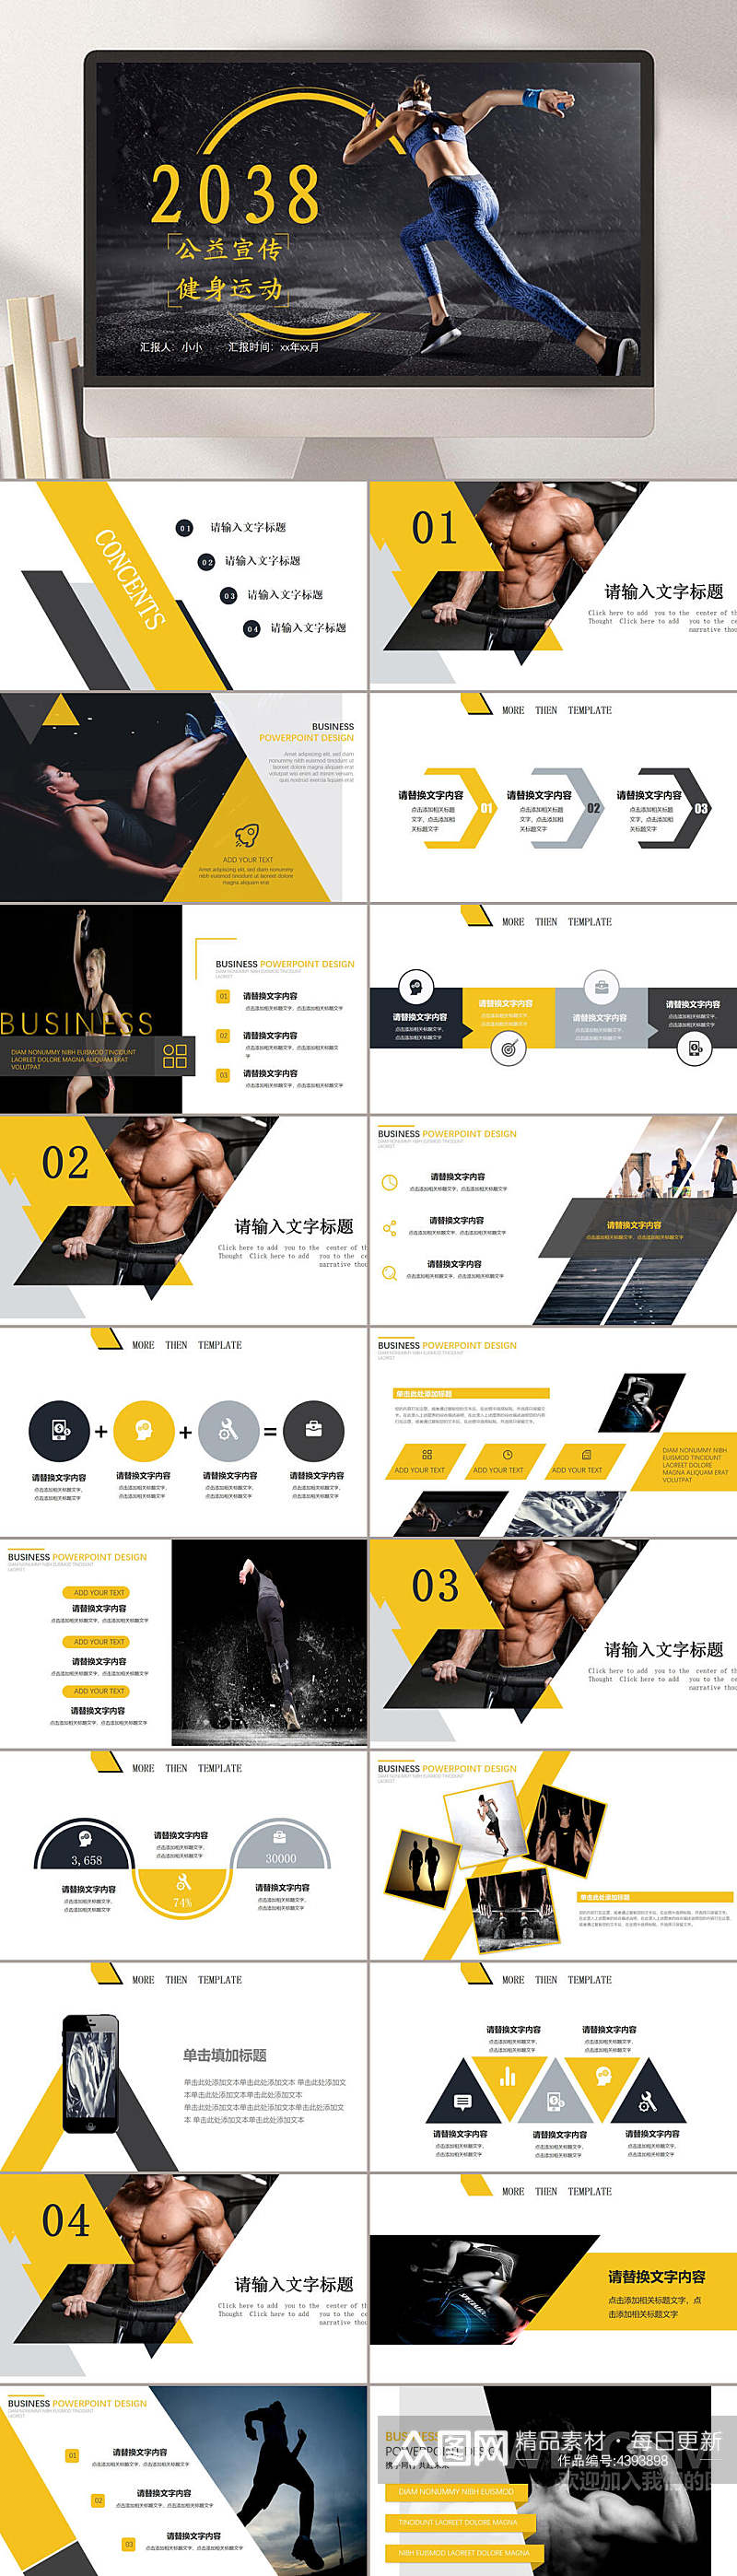 黑黄插图宣传商务体育运动健身PPT素材